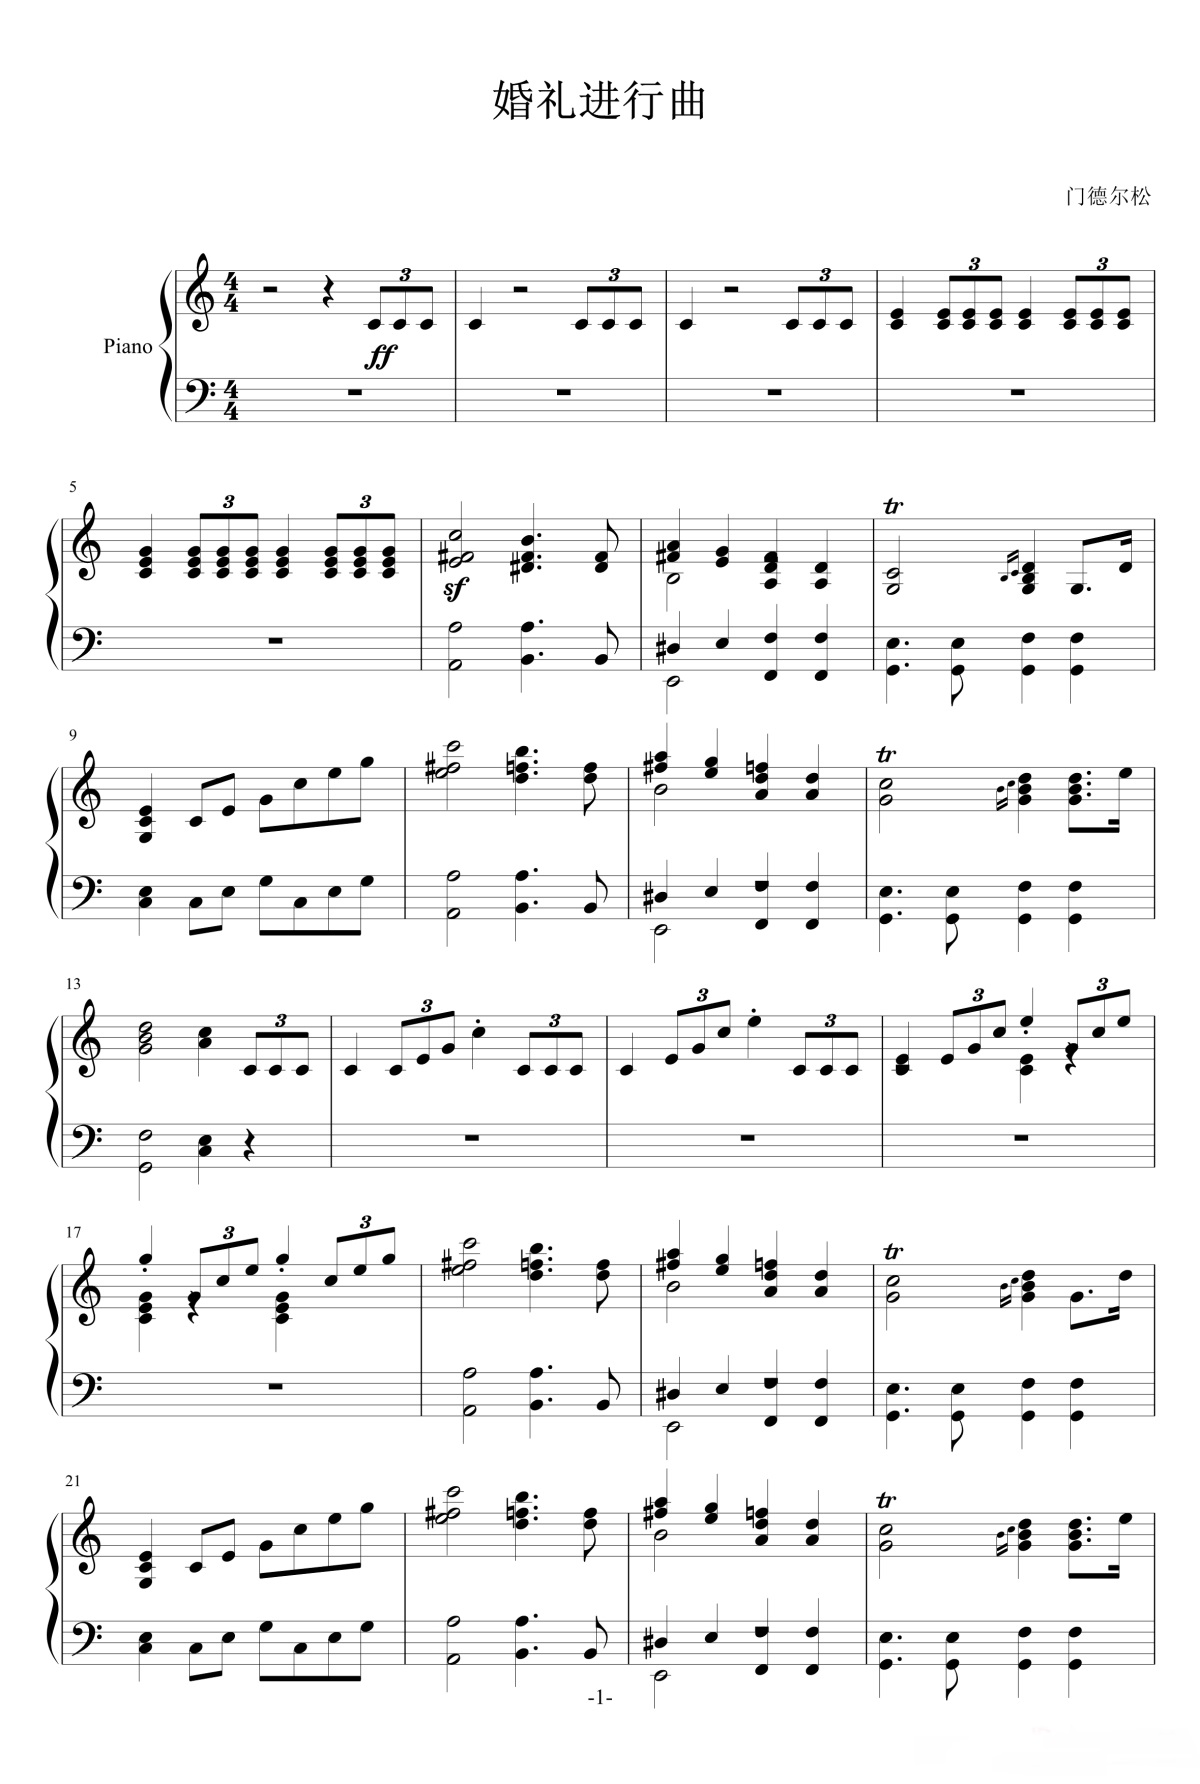 《婚礼进行曲》的钢琴谱钢琴曲谱 - 门德尔松